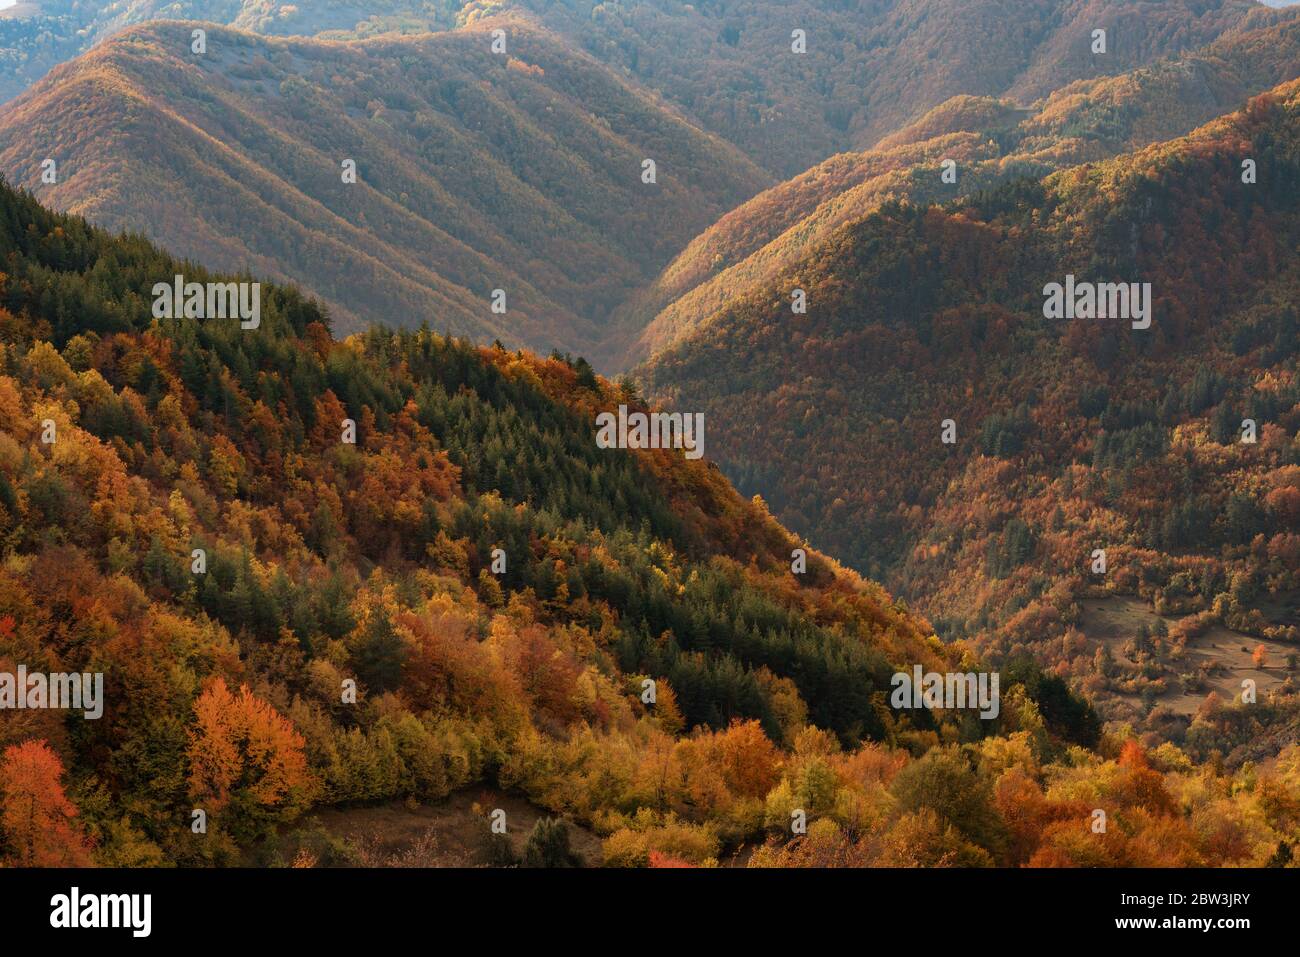 Autumn landscape around the village of Borovo, Rhodope mountains, Bulgaria Stock Photo